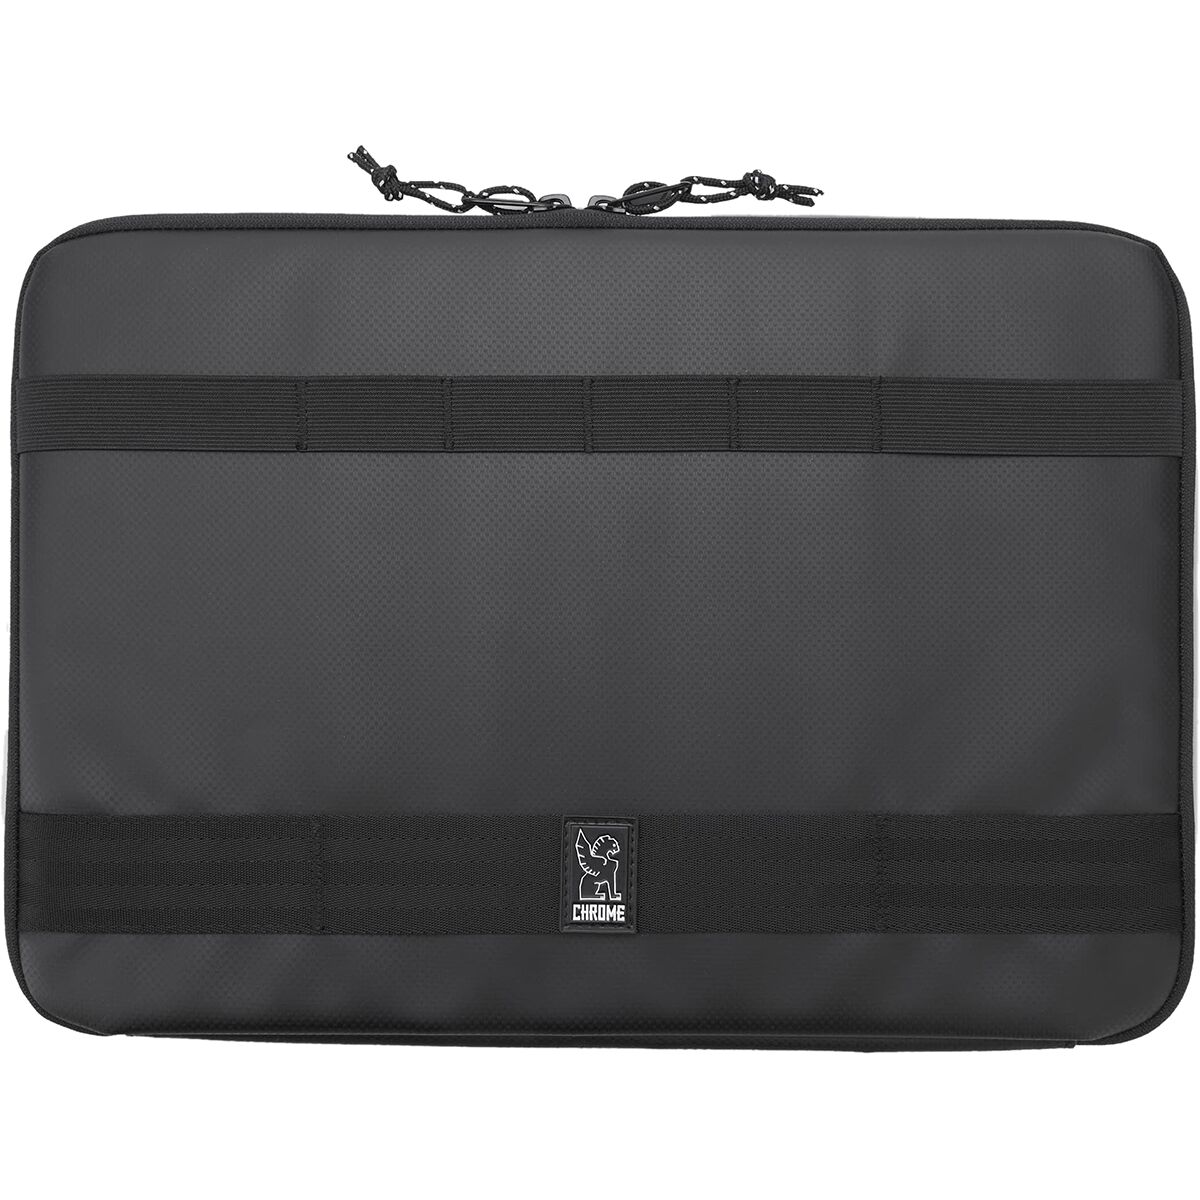 Chrome Large Laptop Sleeve Black, One Size